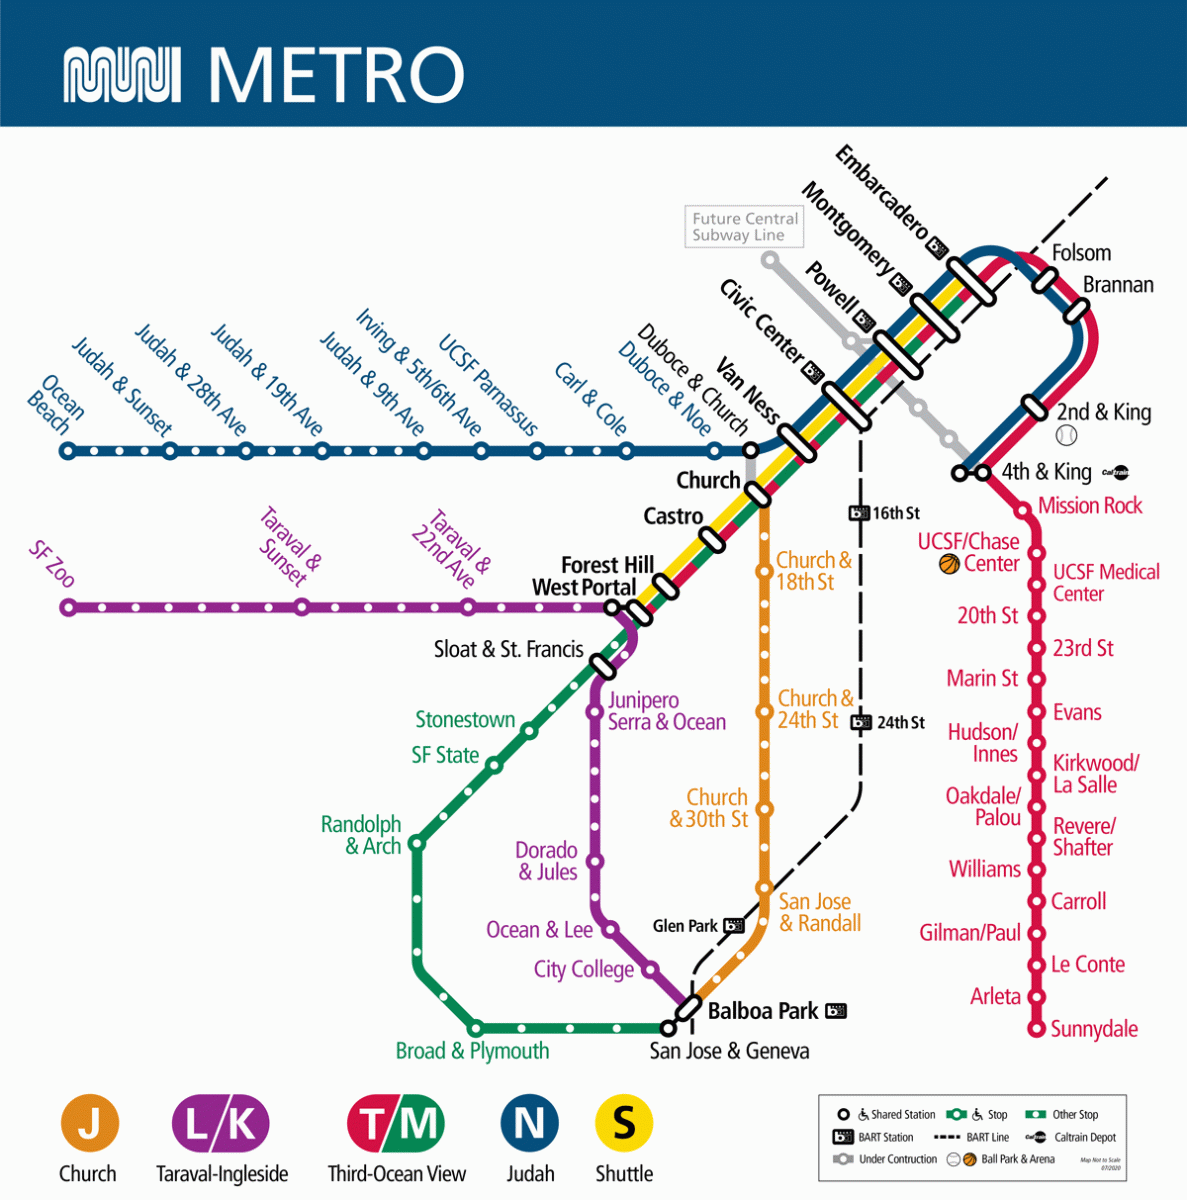 New detailed Muni Metro map